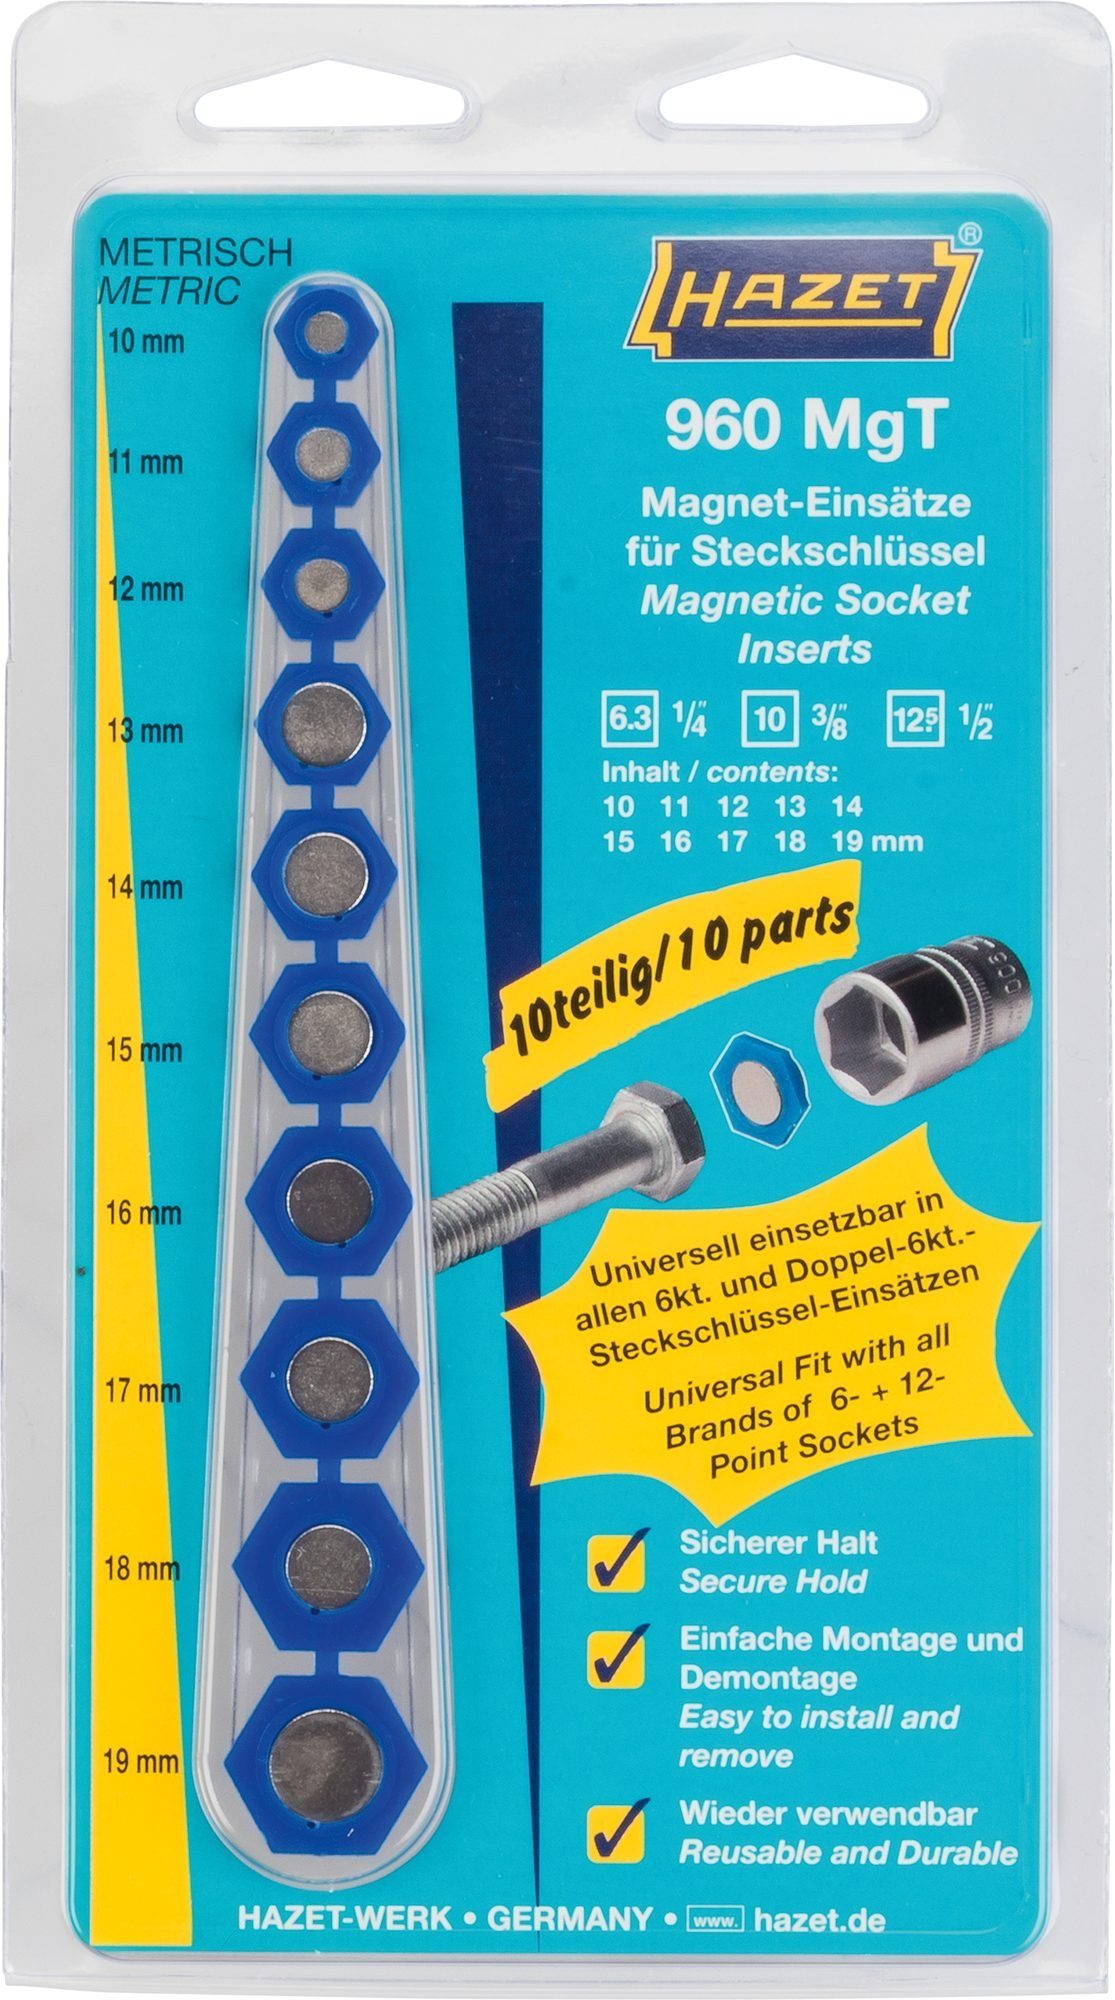 Magnet-Einsatz Hazet HAZET 960MGT Steckschlüssel für Steckschlüssel,